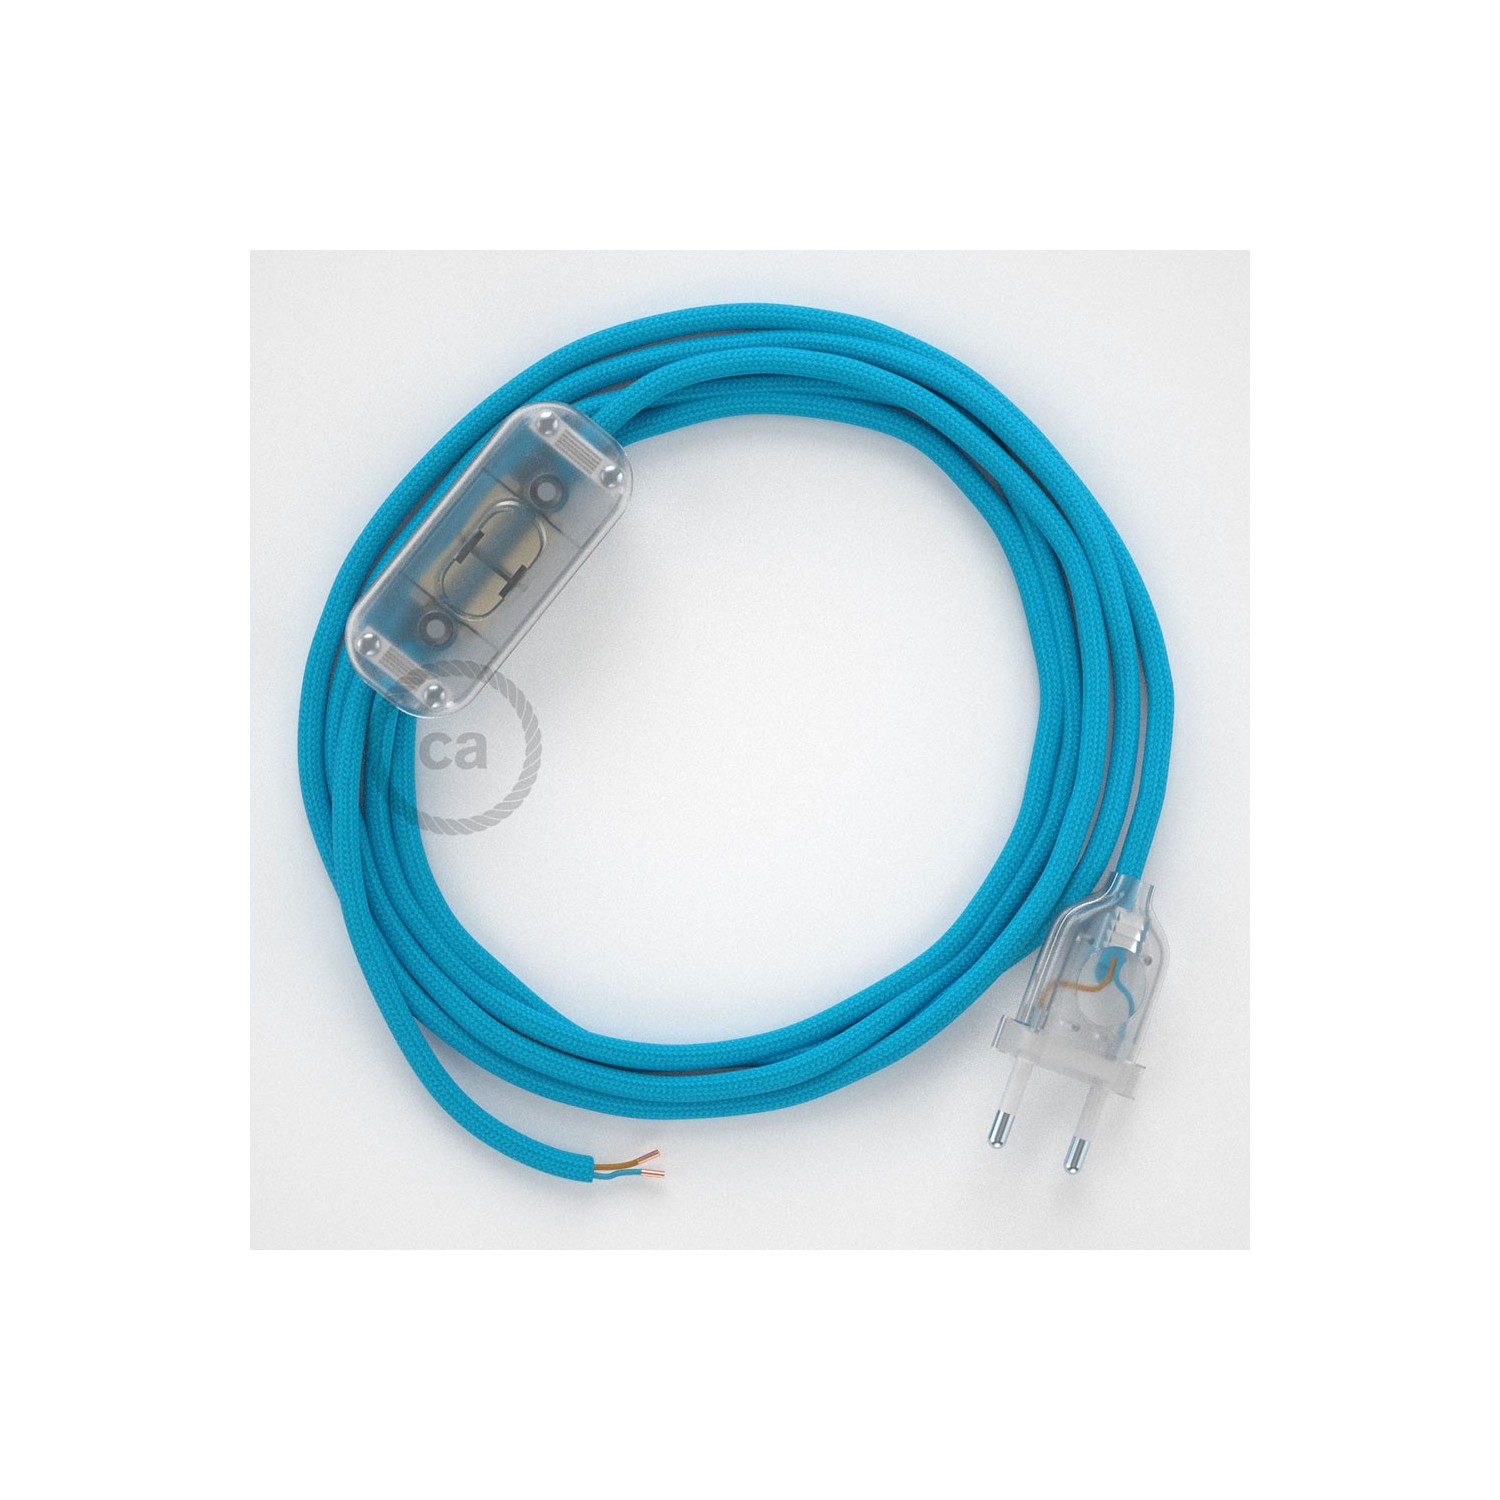 Cableado para lámpara, cable RM11 Efecto Seda Celeste 1,8m. Elige tu el color de la clavija y del interruptor!